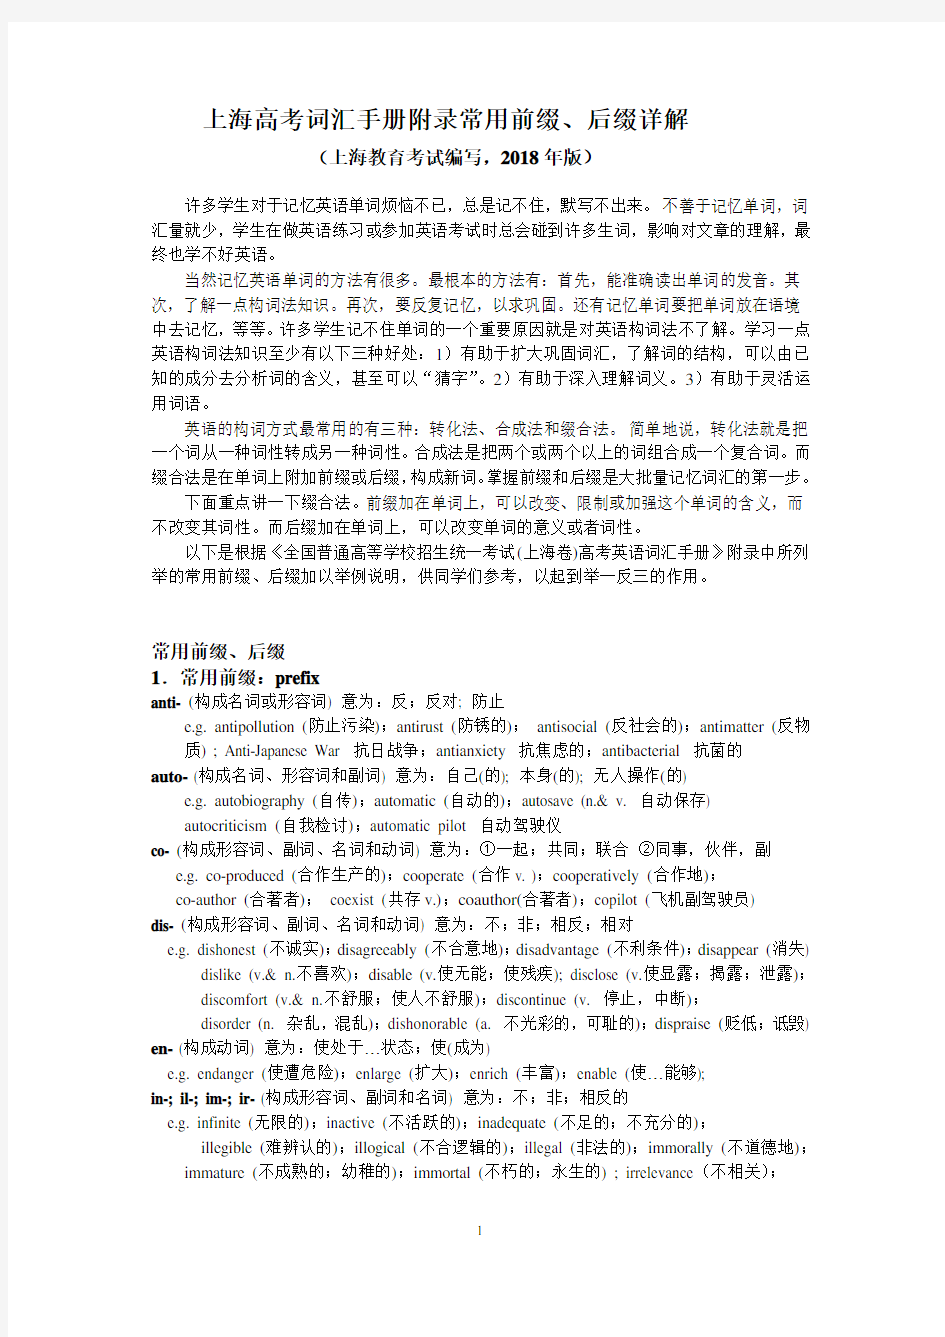 上海高考词汇手册附录常用前缀、后缀详解(上海教育考试院编写,2018年版)